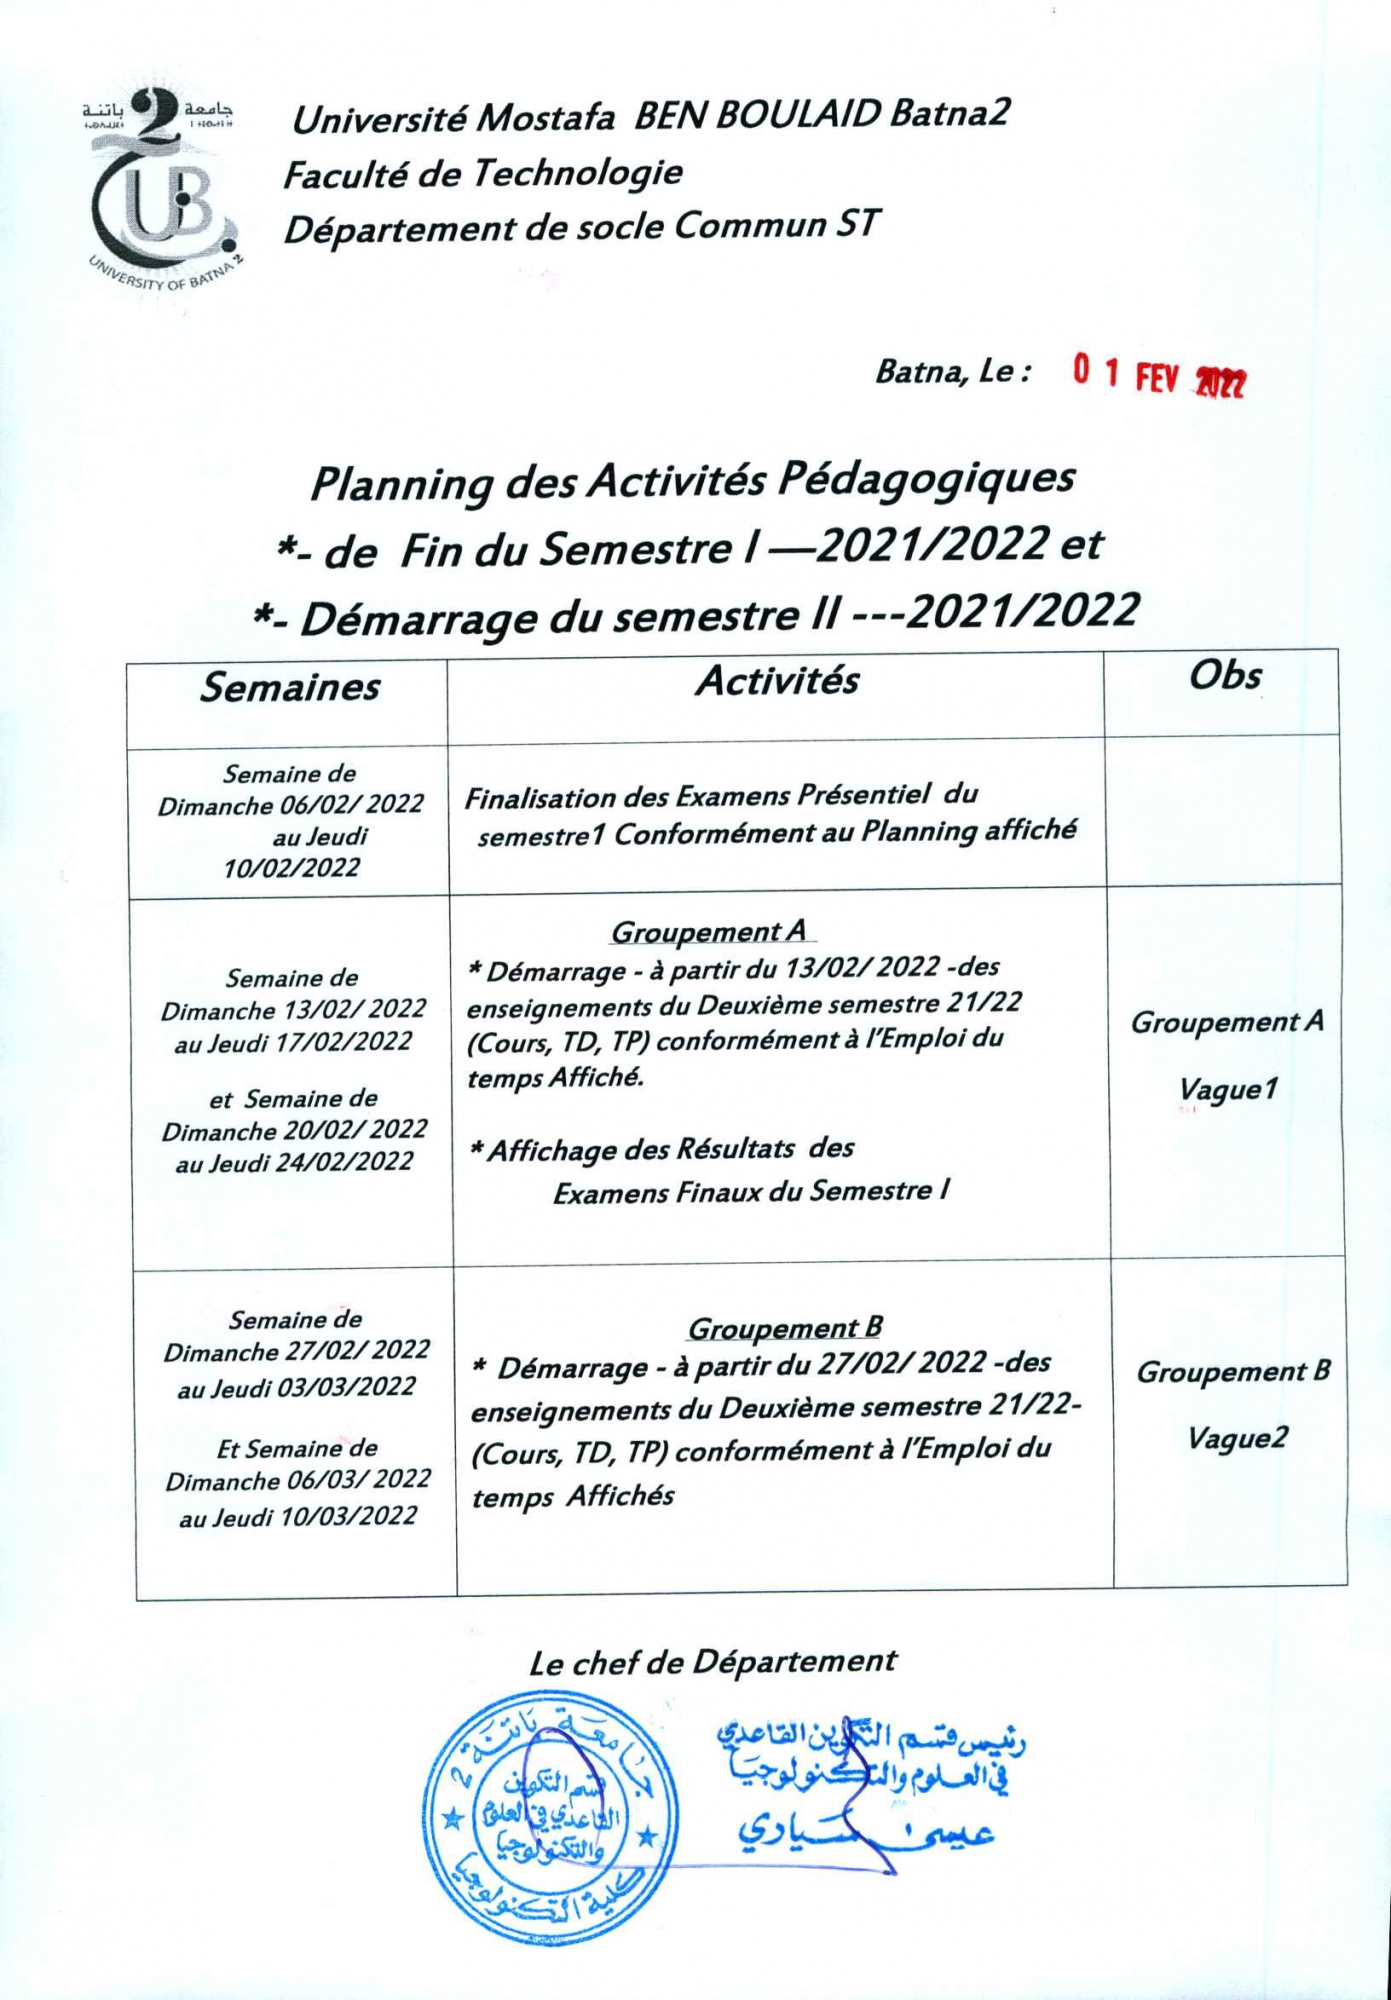 planning_des_activites_pedagogiques_fin_s1_et_debut_s2_